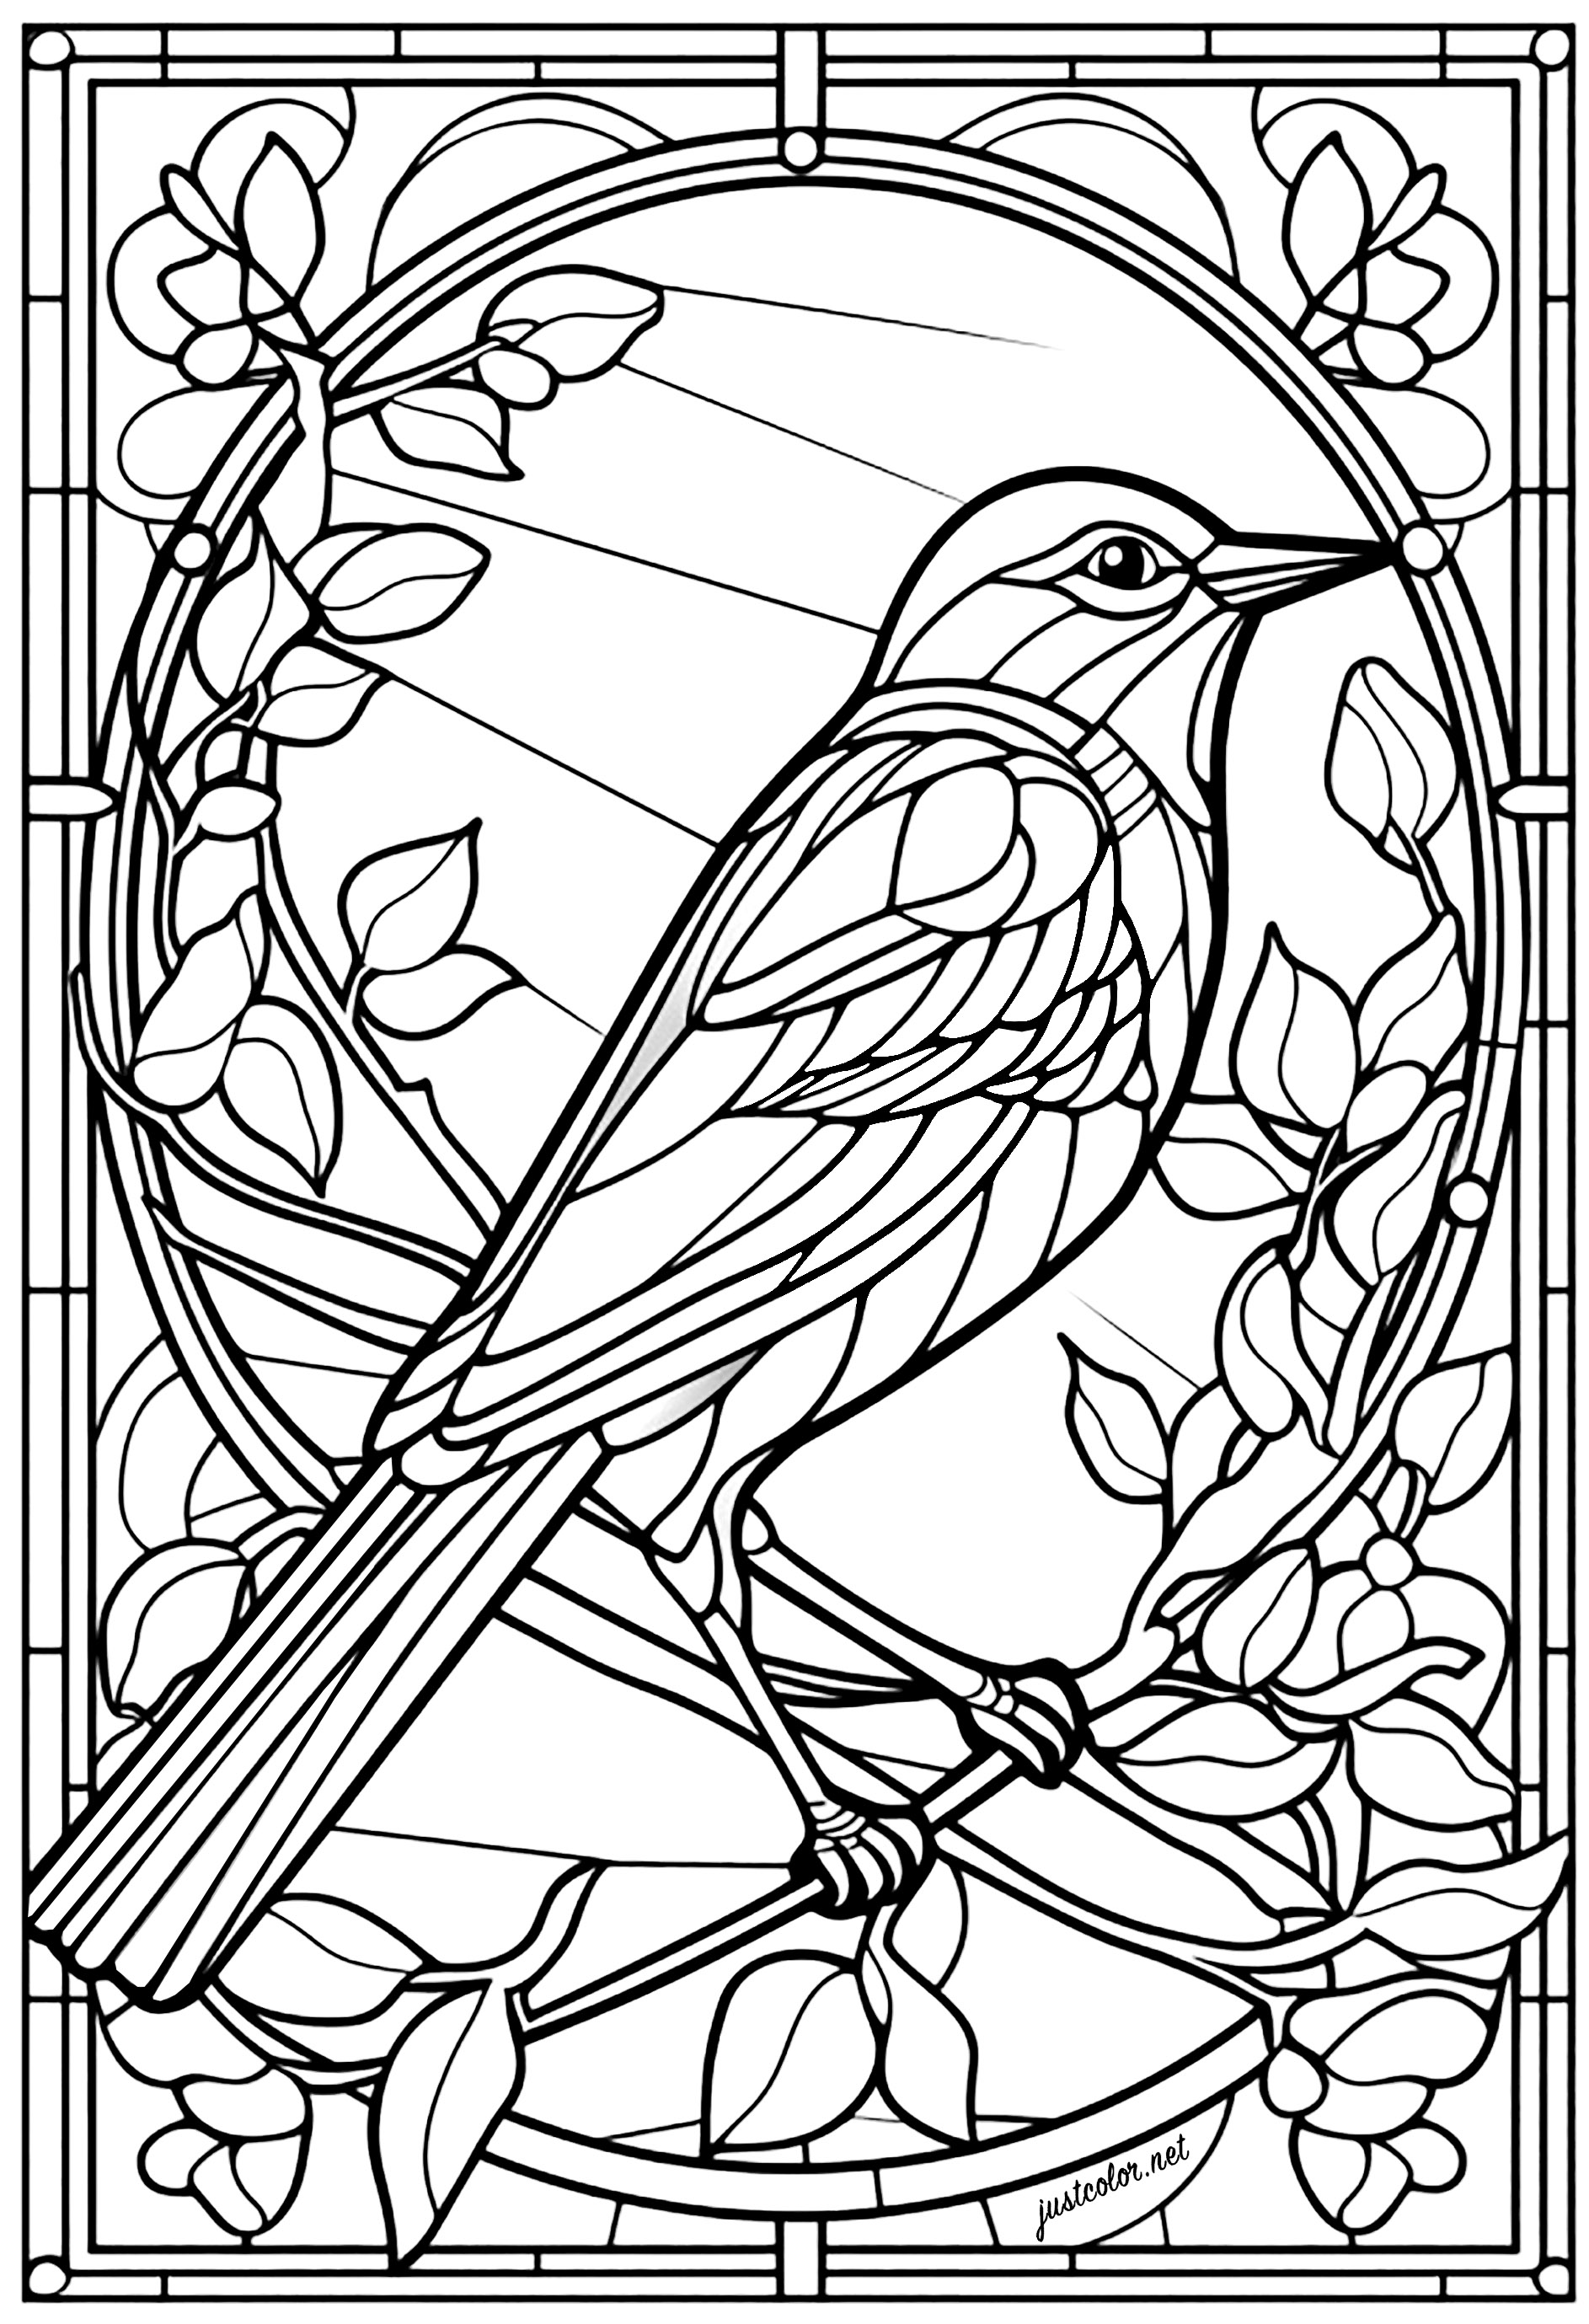 Uccello e fiori in una vetrata colorata. Questo uccello sembra un tordo